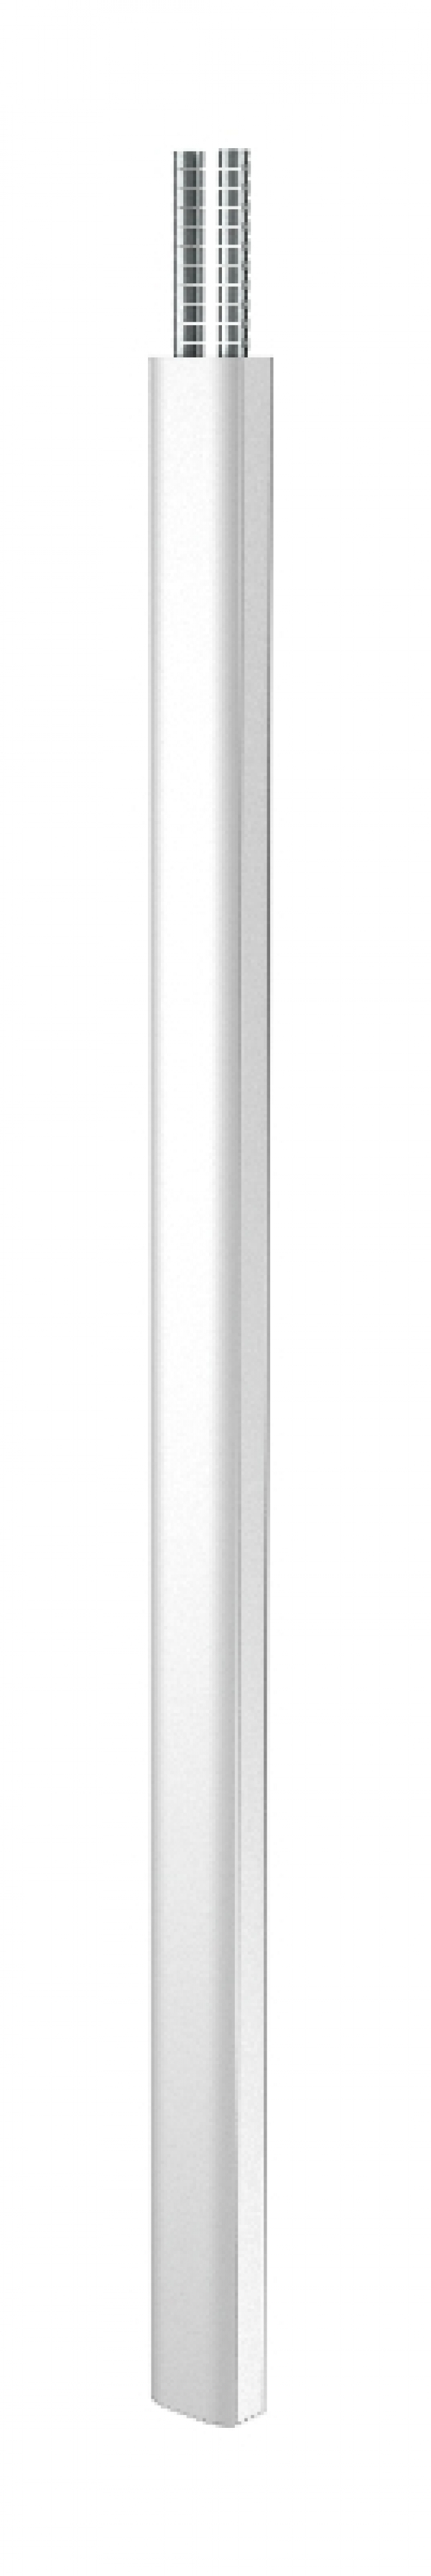 6289976 - OBO BETTERMANN Электромонтажная колонна 2,3-3,8 м 2-х сторонняя Modul45 80x130x2300 мм (алюминий) (ISSDM45FEL).